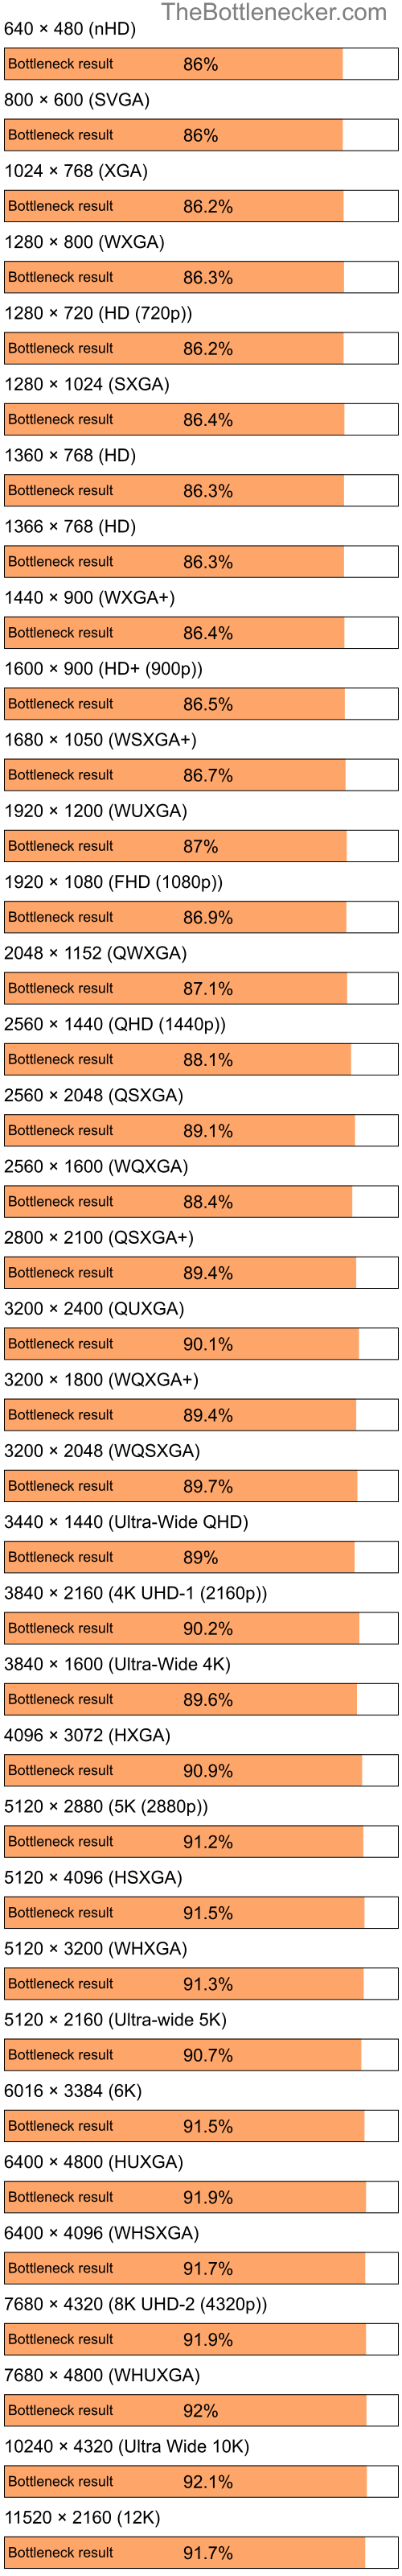 Bottleneck results by resolution for Intel Celeron and NVIDIA GeForce FX Go 5200 in General Tasks